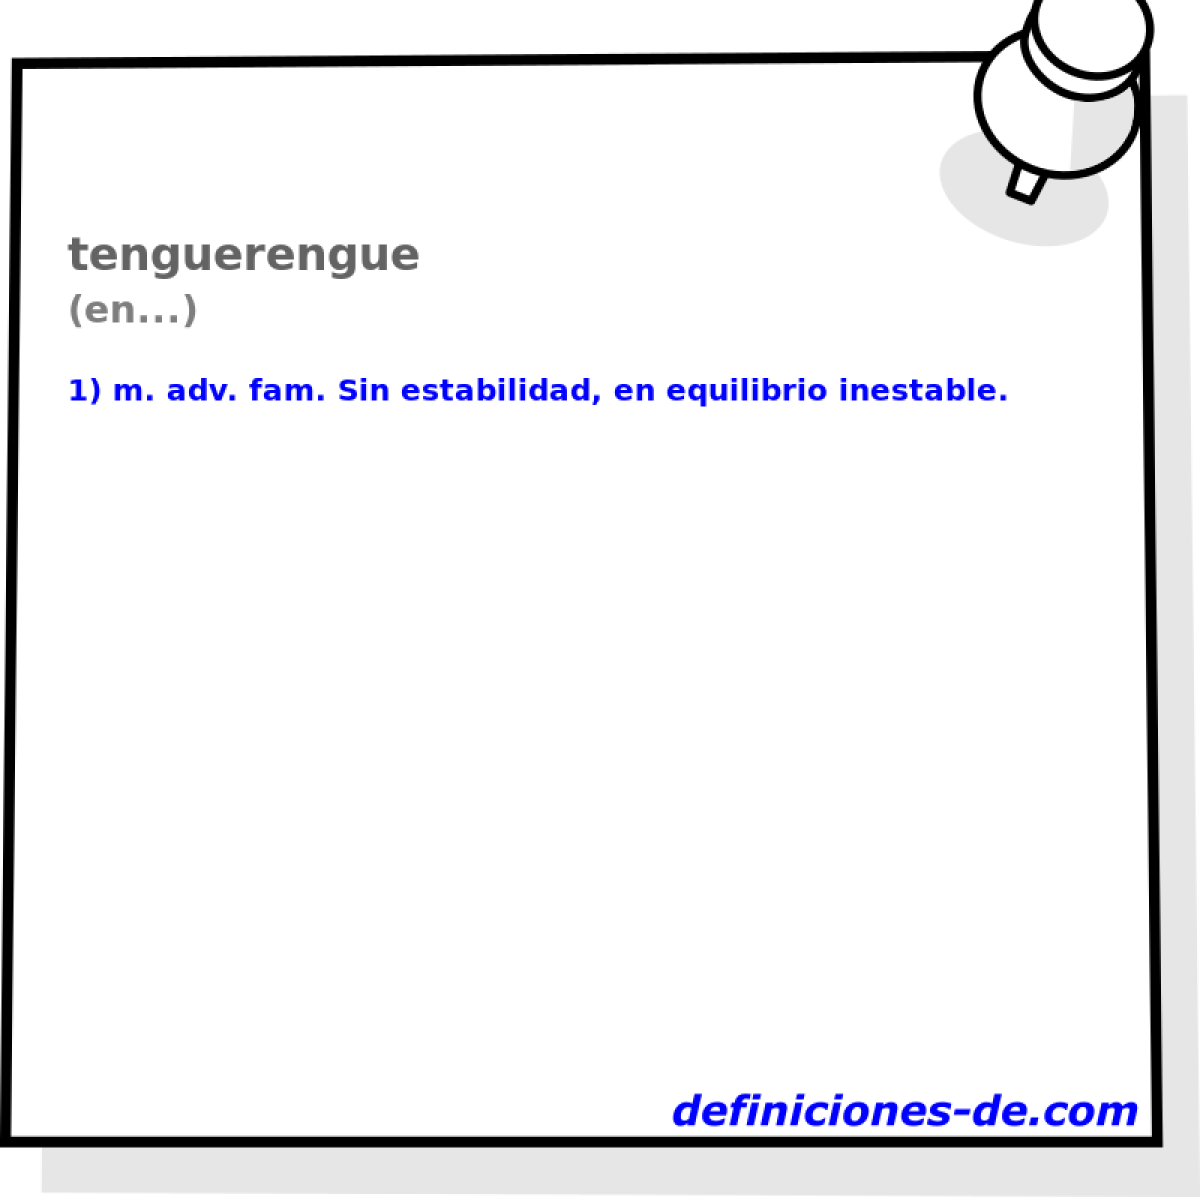 tenguerengue (en...)